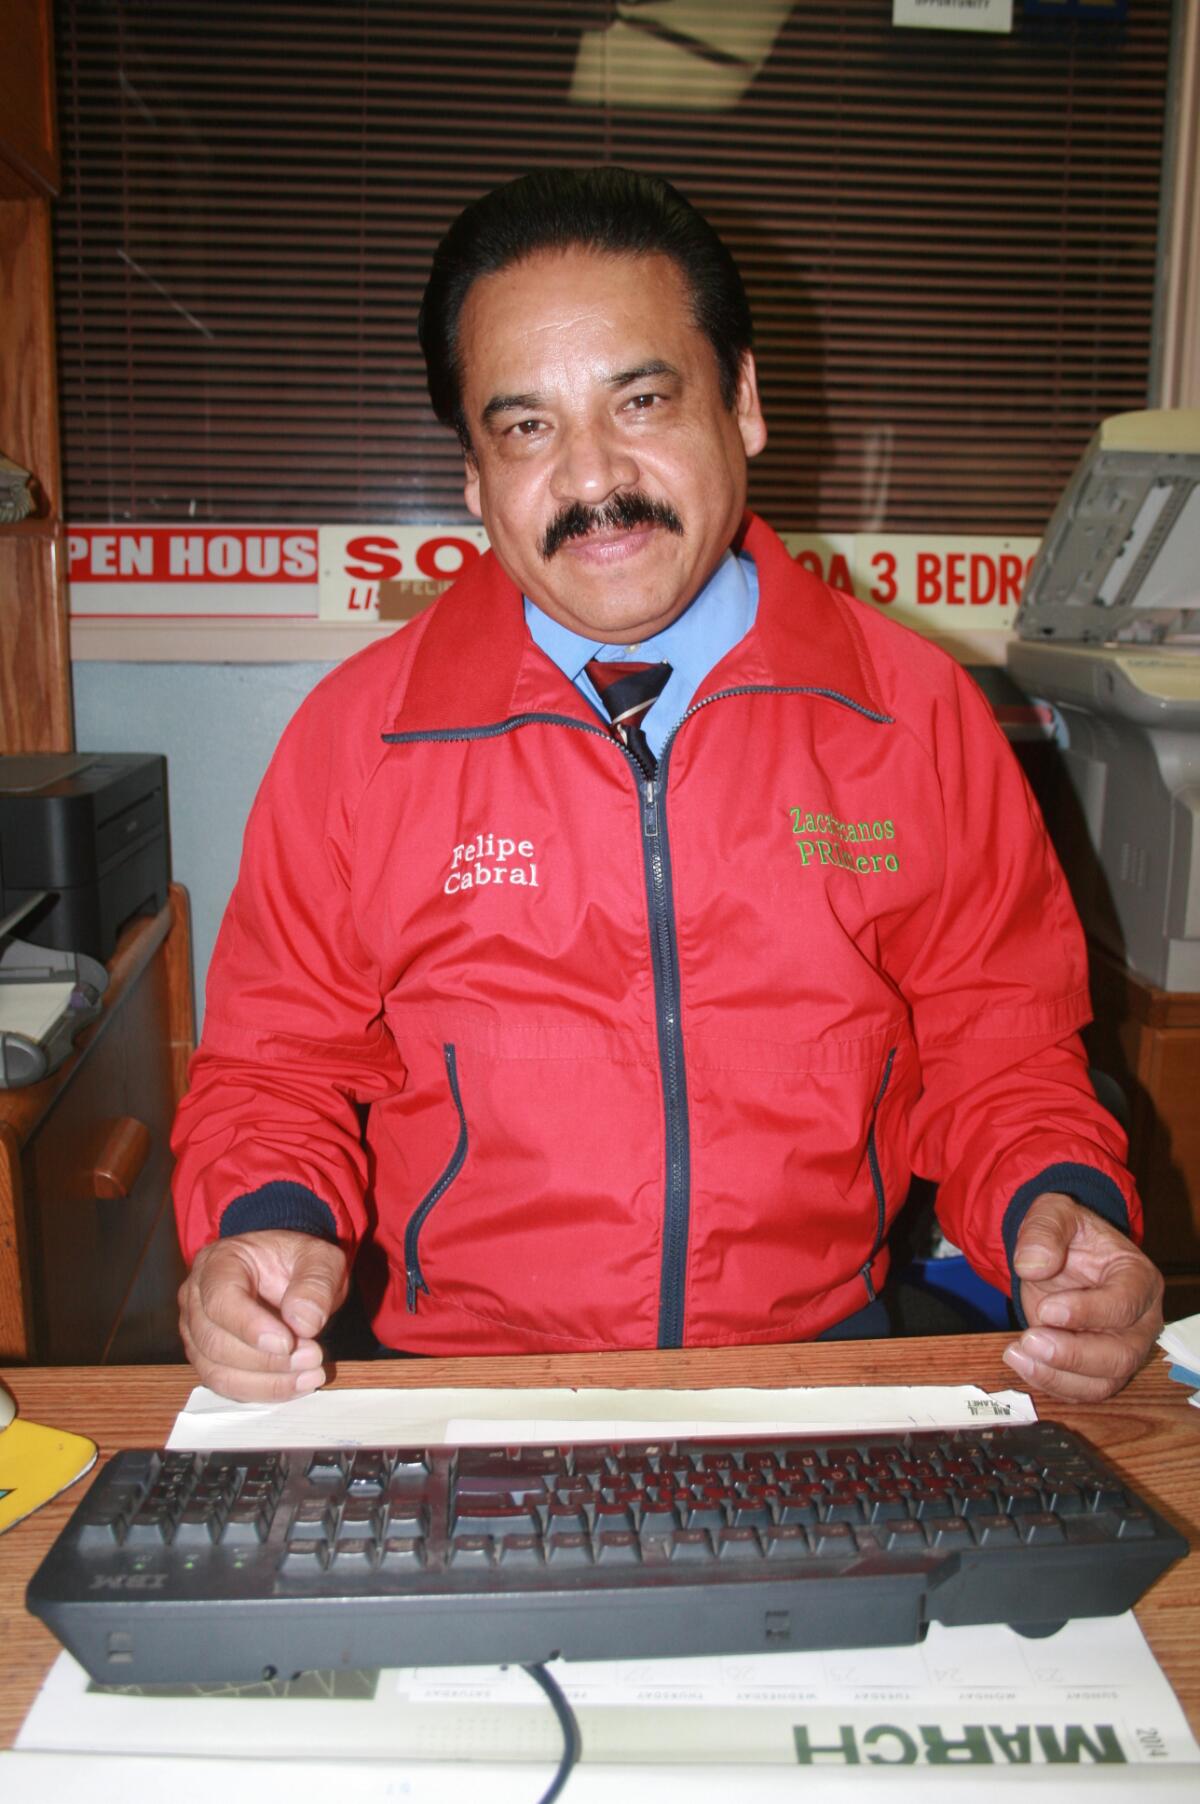 Felipe Cabral, originario de Valparaiso, en el estado de Zacatecas, fue electo diputado suplente federal en el periodo 2009-2012, y en el periodo 2016-2018 fue diputado estatal.